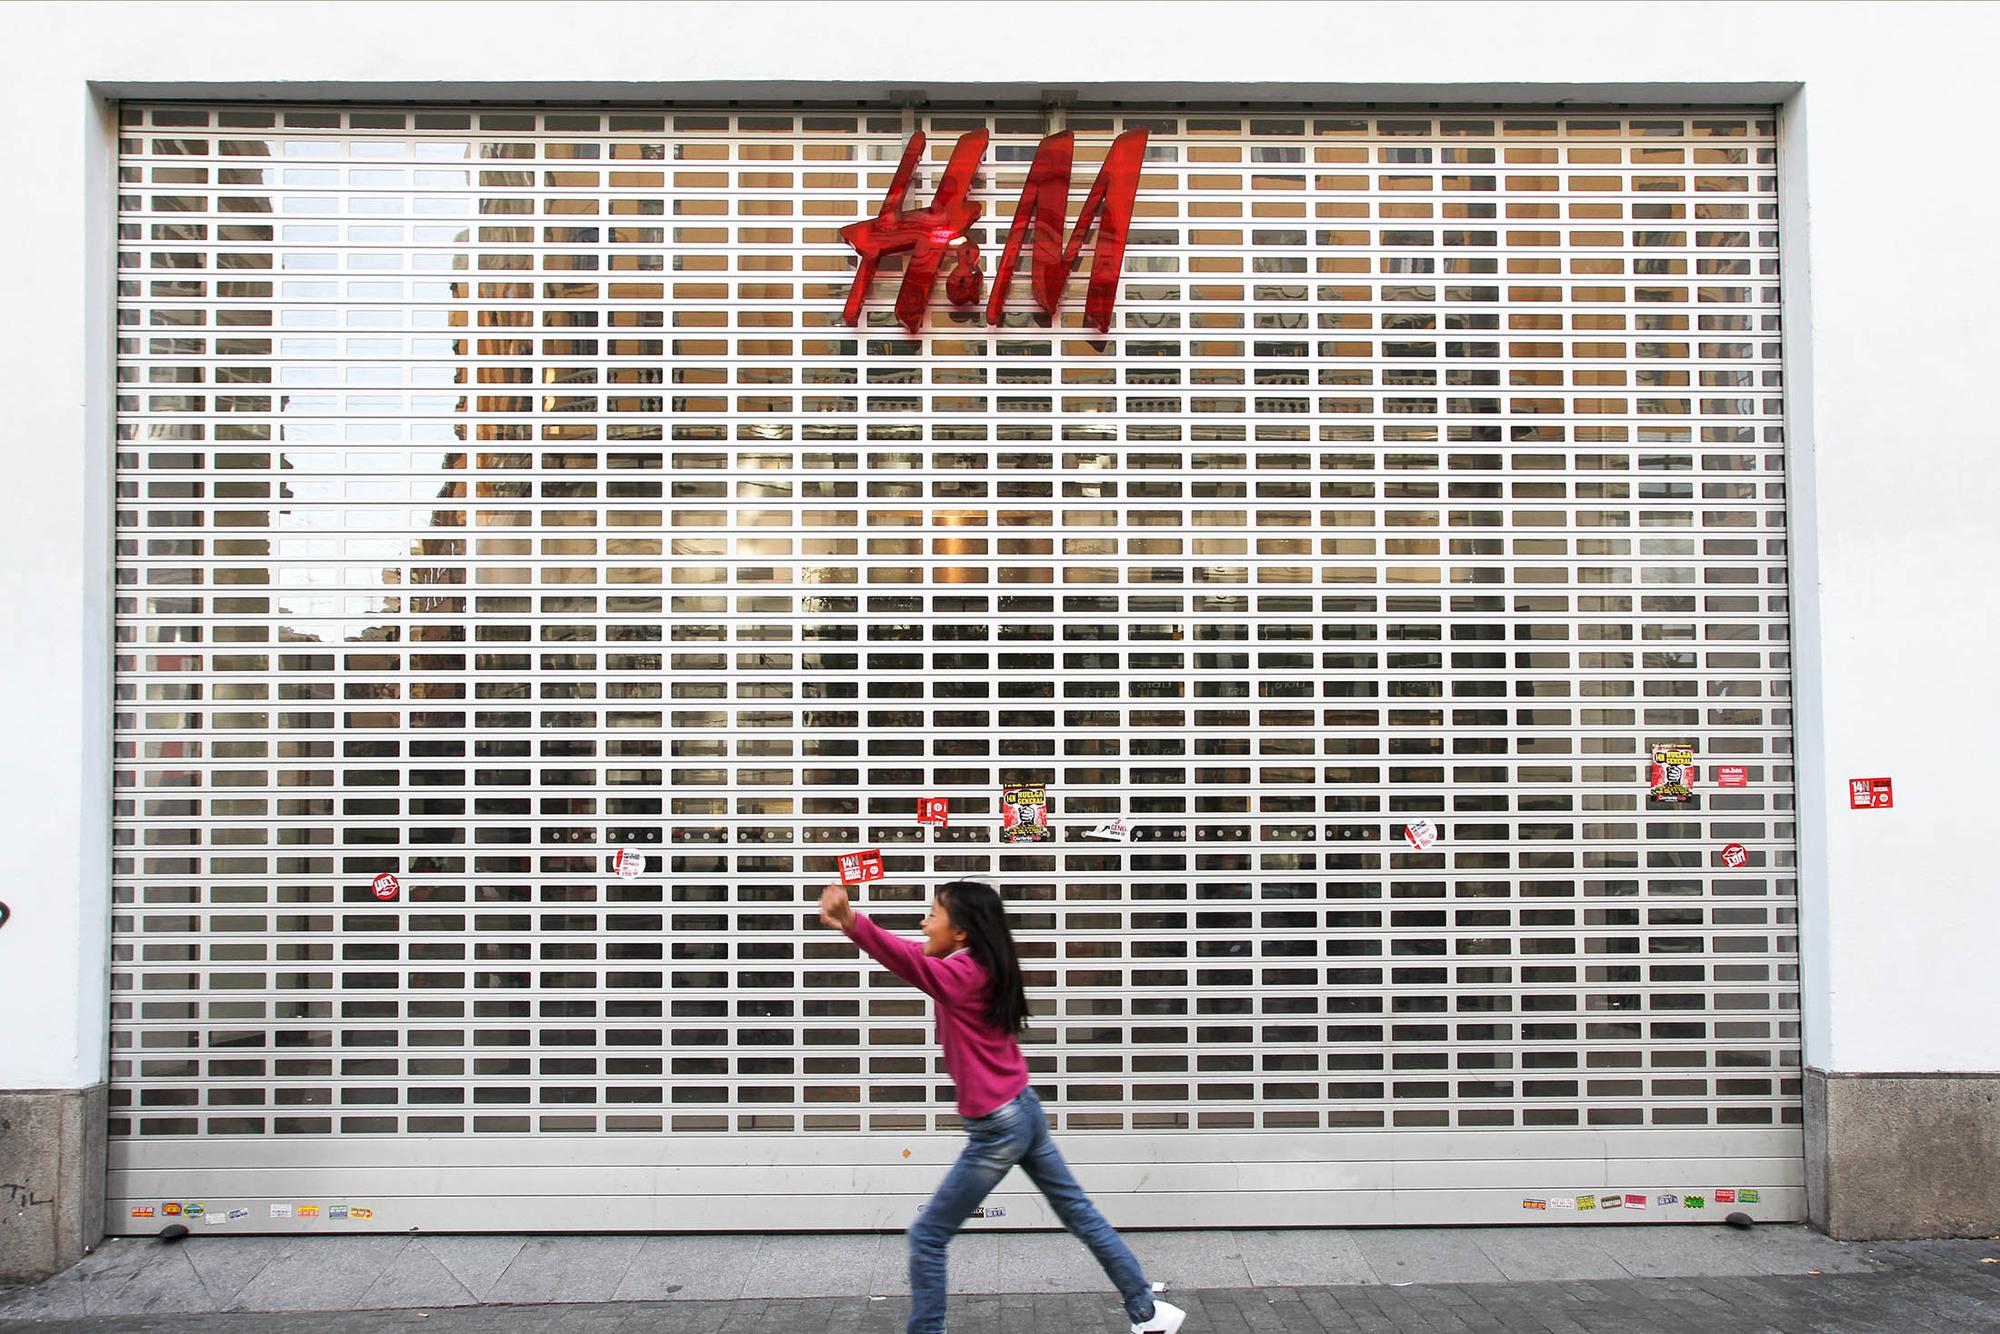 H&M tienda de ropa cerrada huelga general